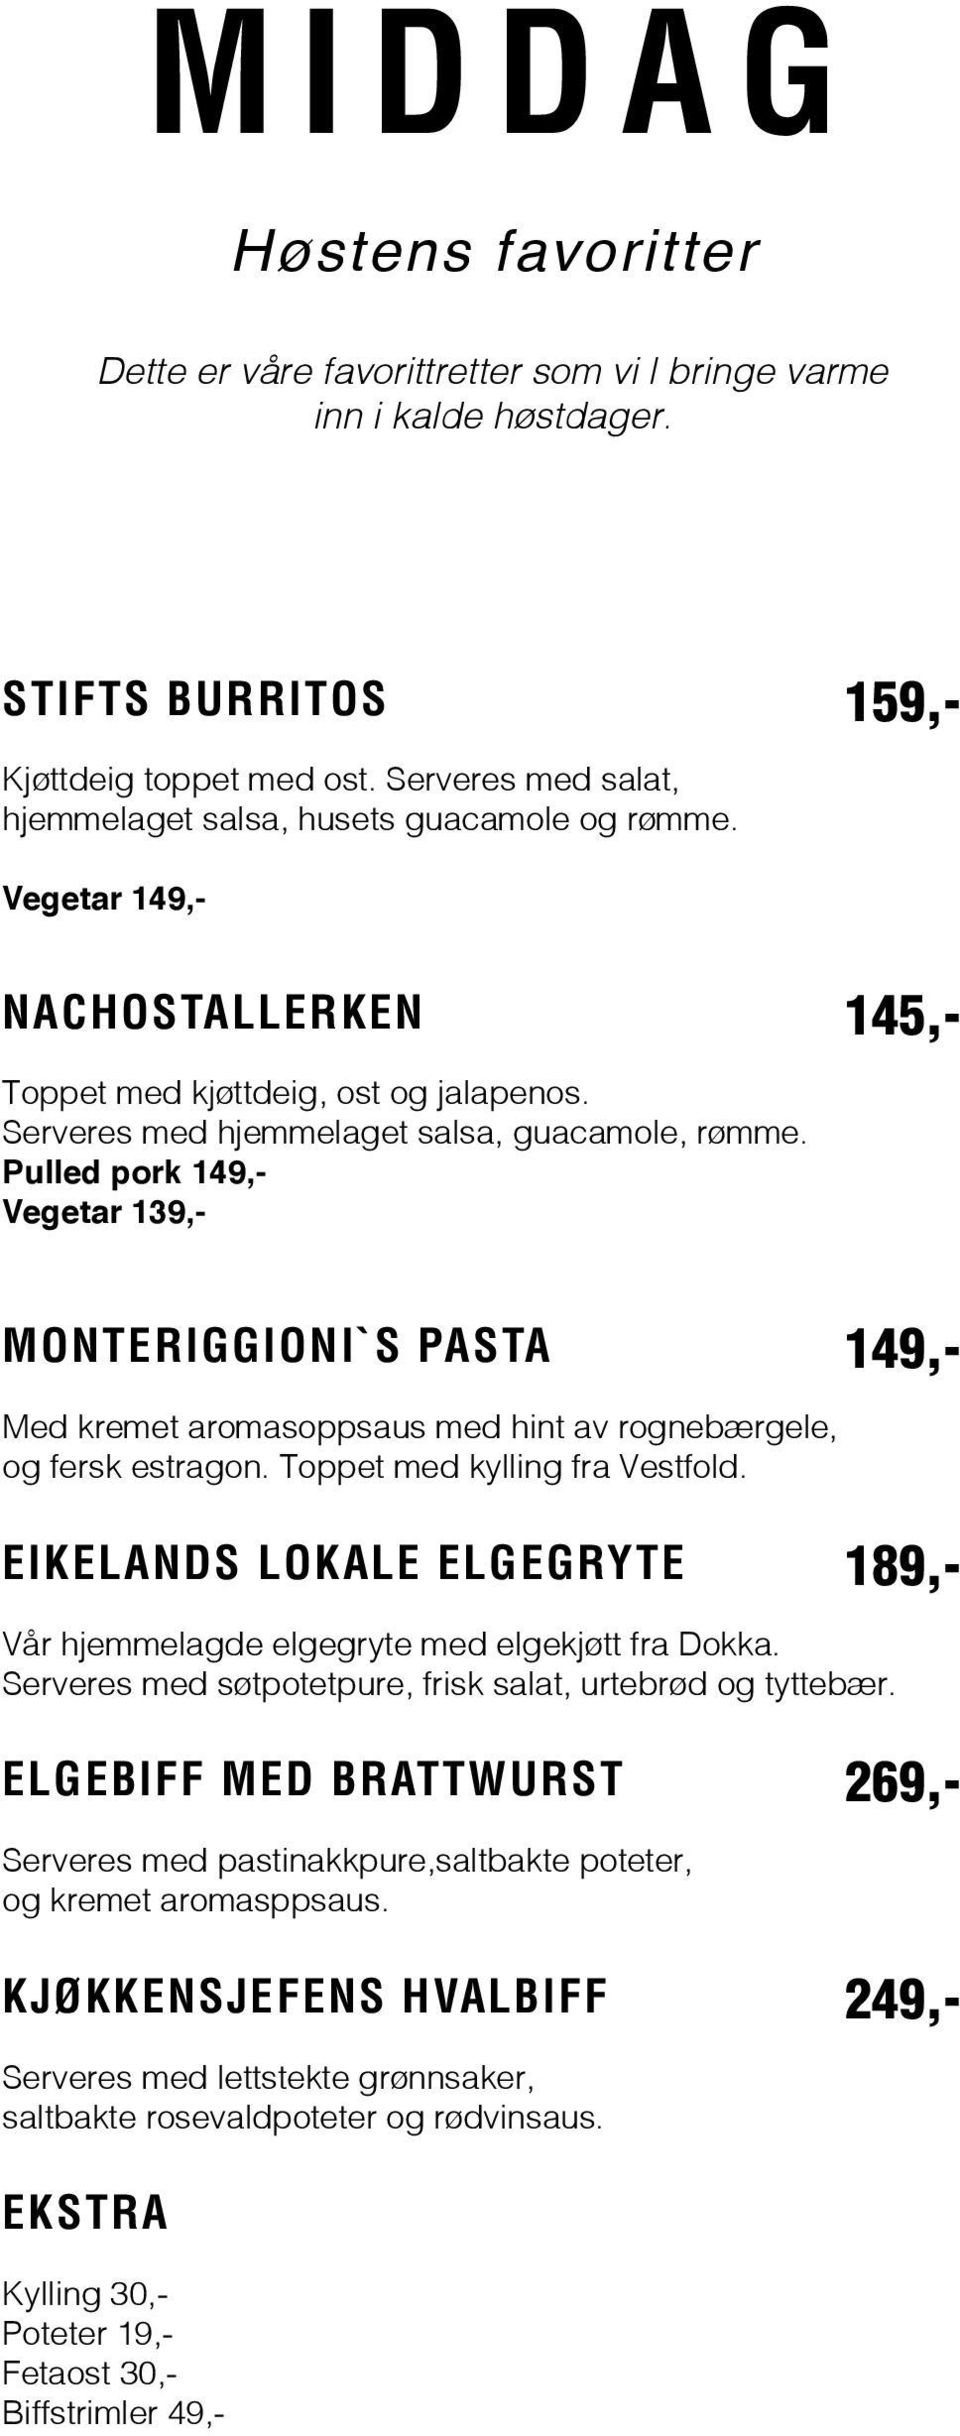 Pulled pork Vegetar 139,- MONTERIGGIONI`S PASTA Med kremet aromasoppsaus med hint av rognebærgele, og fersk estragon. Toppet med kylling fra Vestfold.